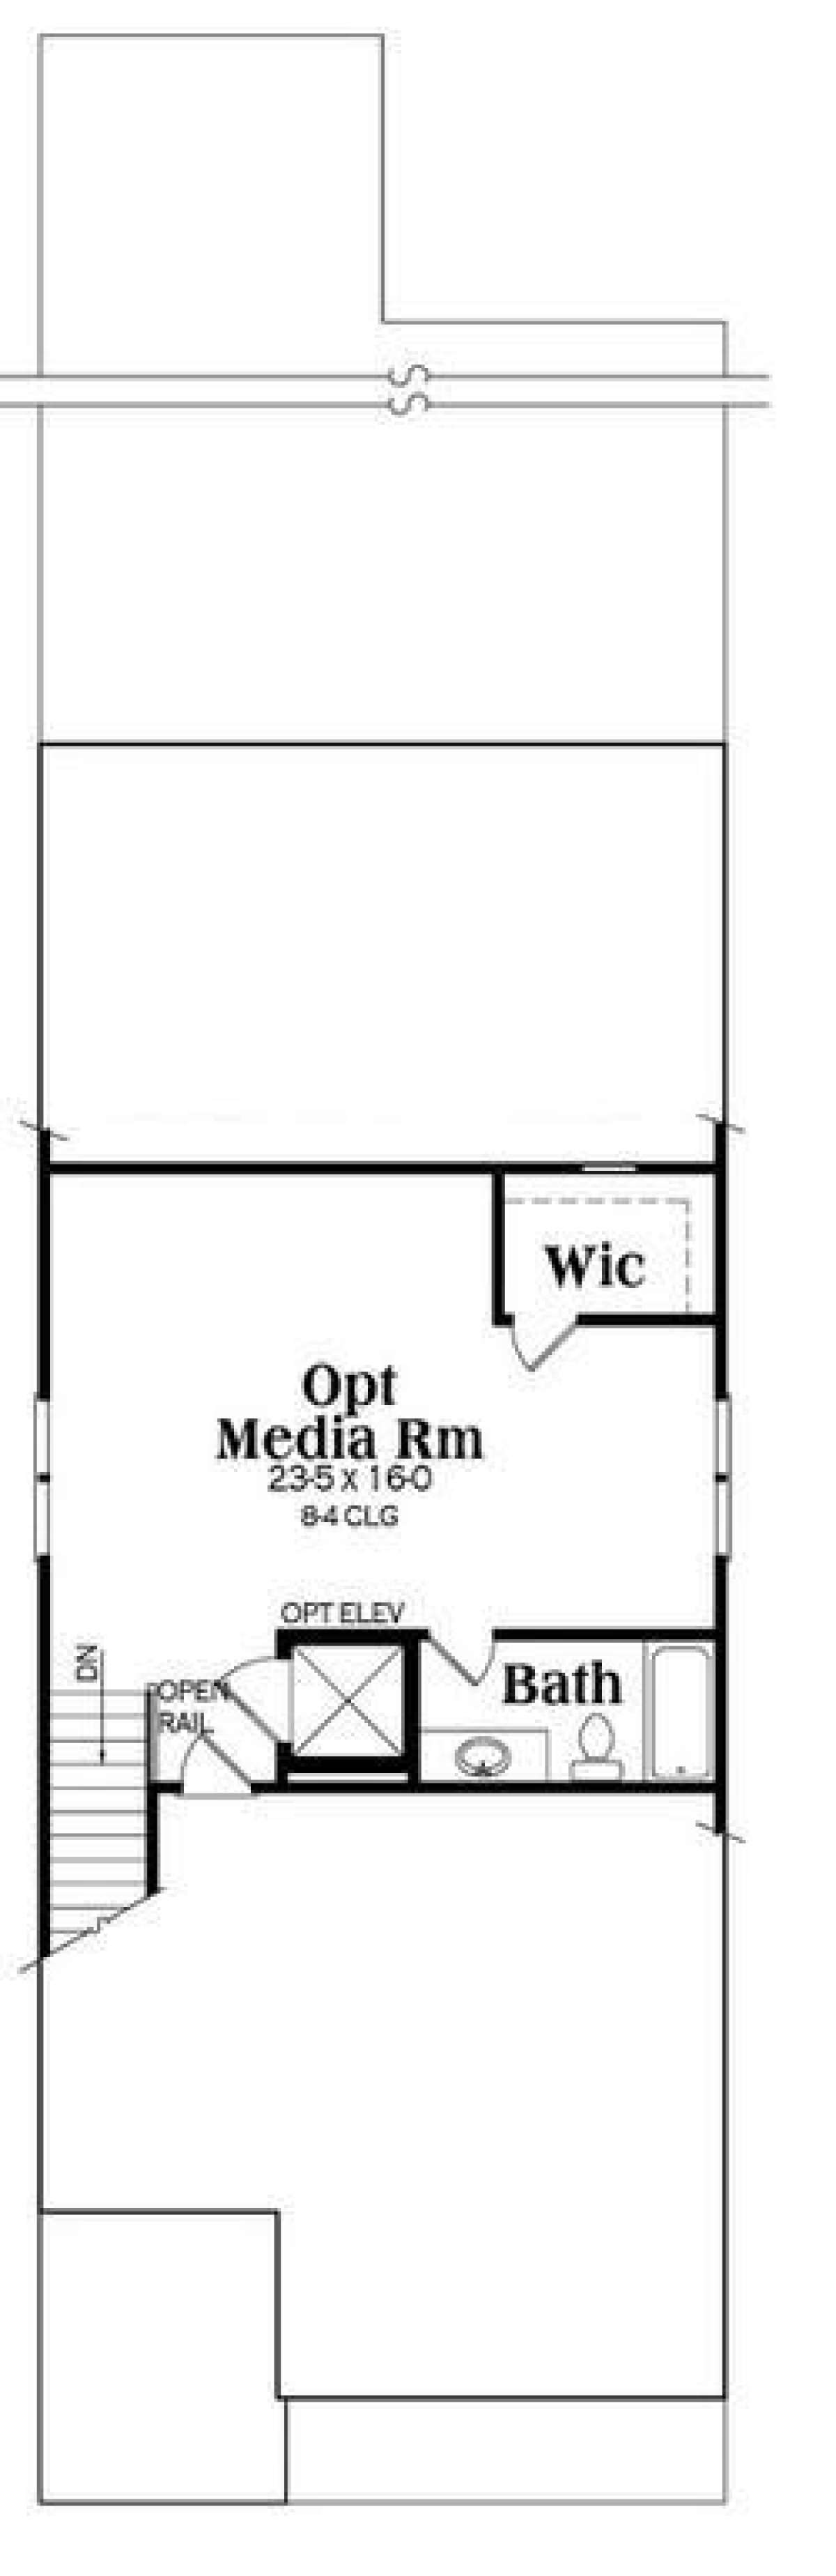 Media Room for House Plan #009-00251